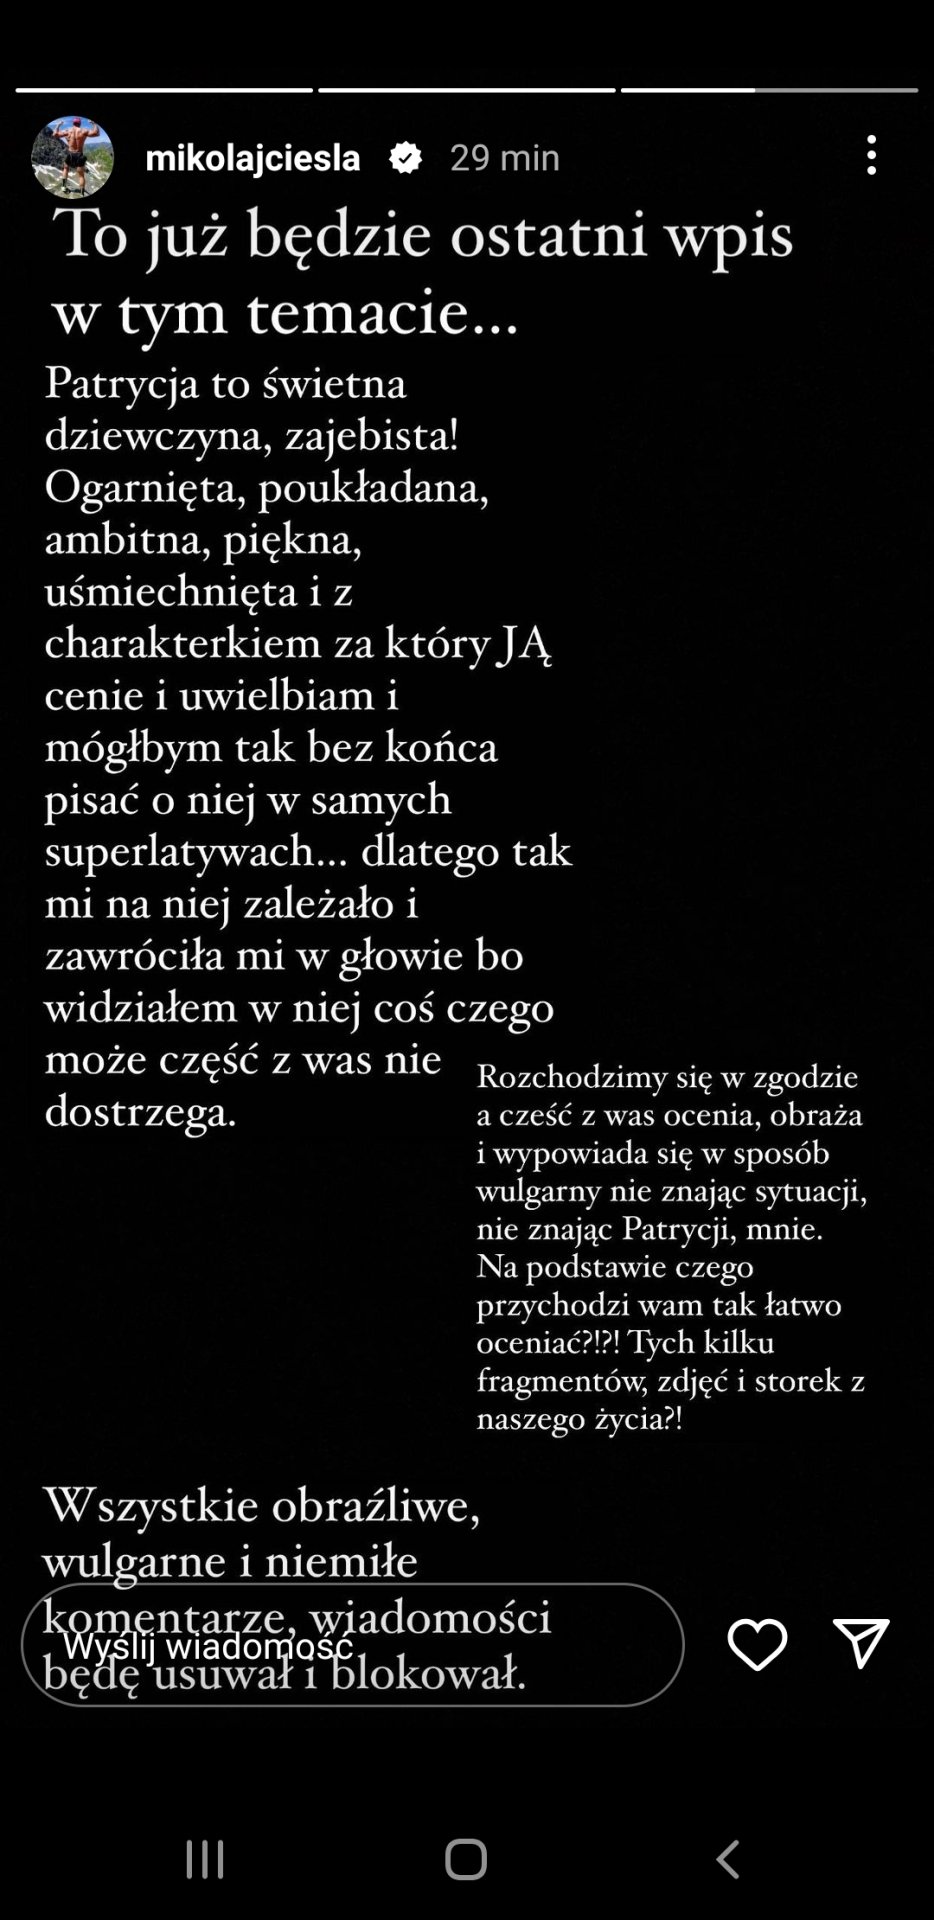 Mikołaj Cieśla, déclaration Instagram